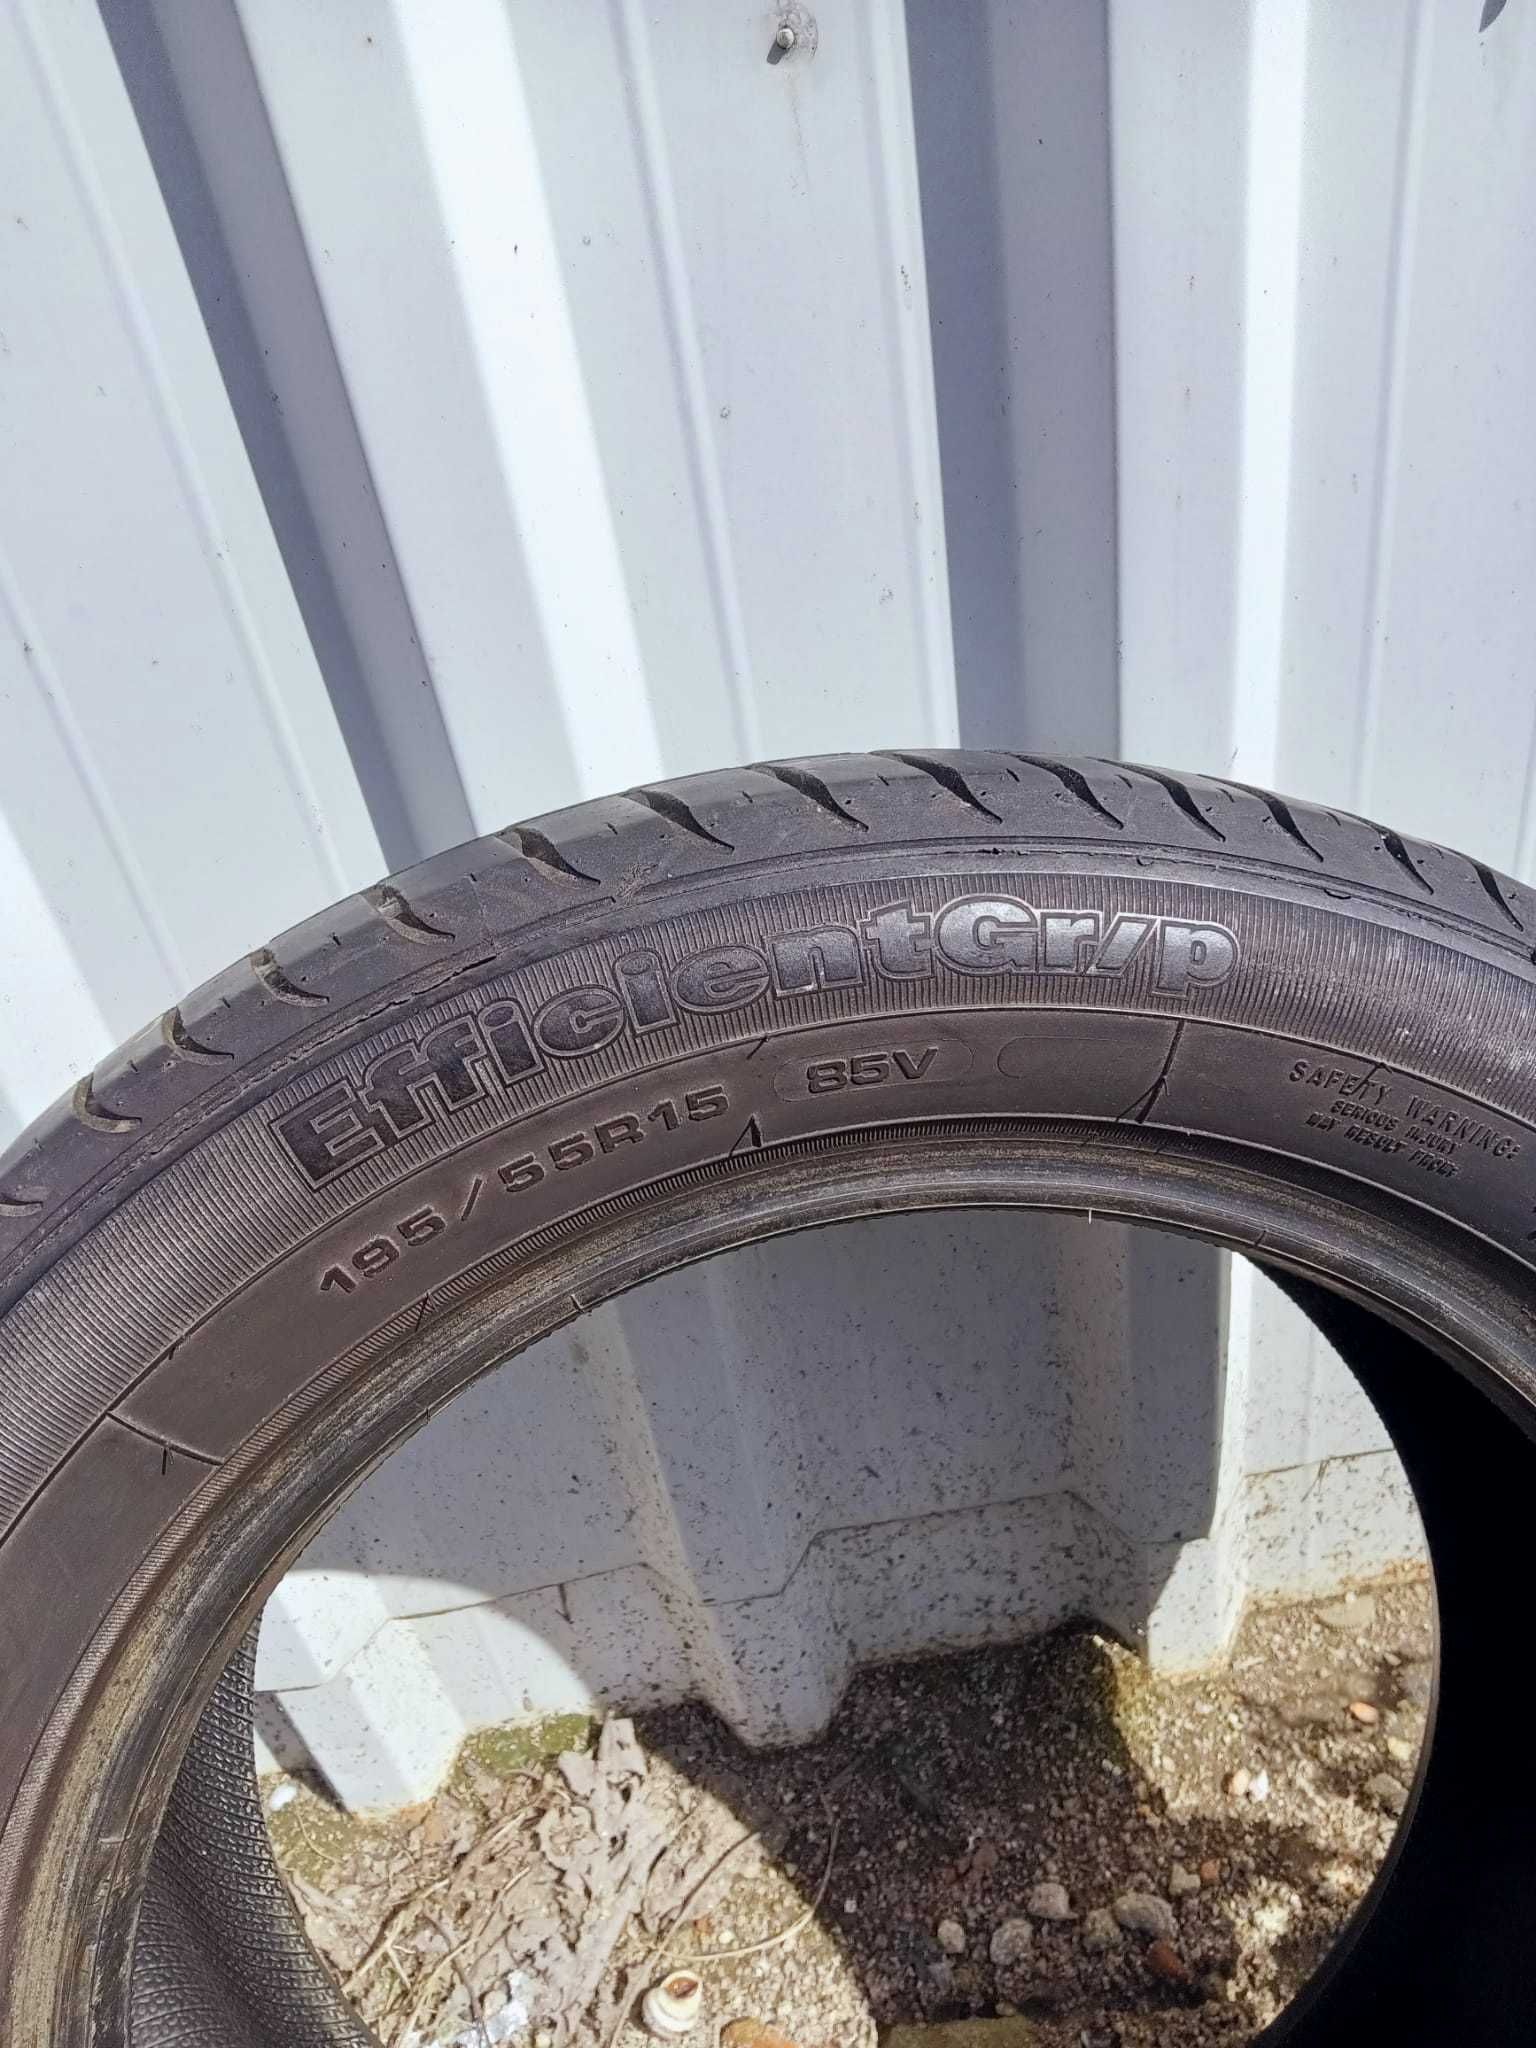 2 pneus quase a meio uso